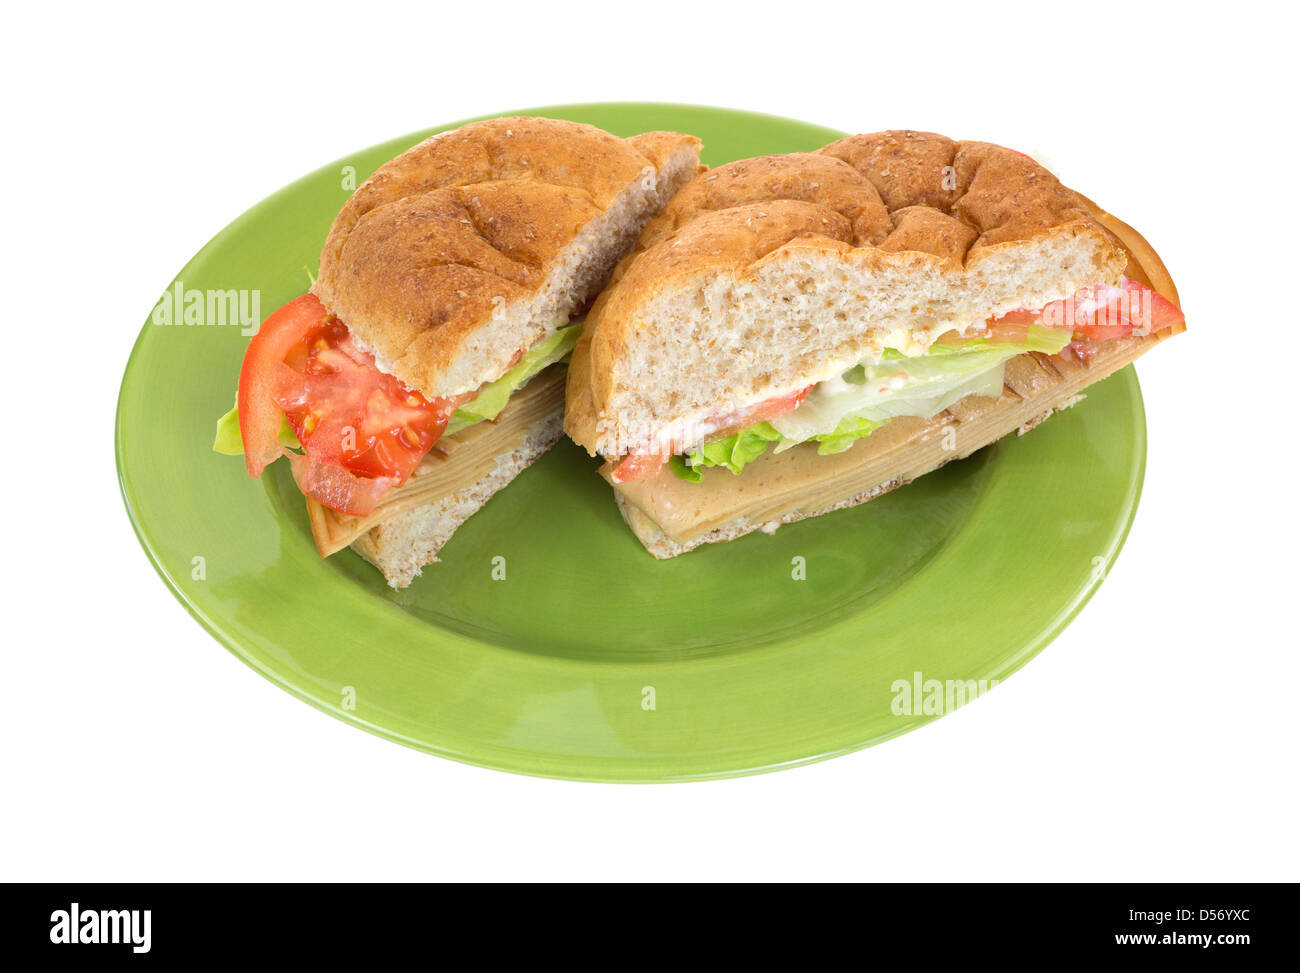 Eine Weizen sperrige Rollen Tofu fleischlose Truthahn-Sandwich mit Salat Tomaten und Mayonnaise in der Mitte auf einer grünen Platte geschnitten. Stockfoto